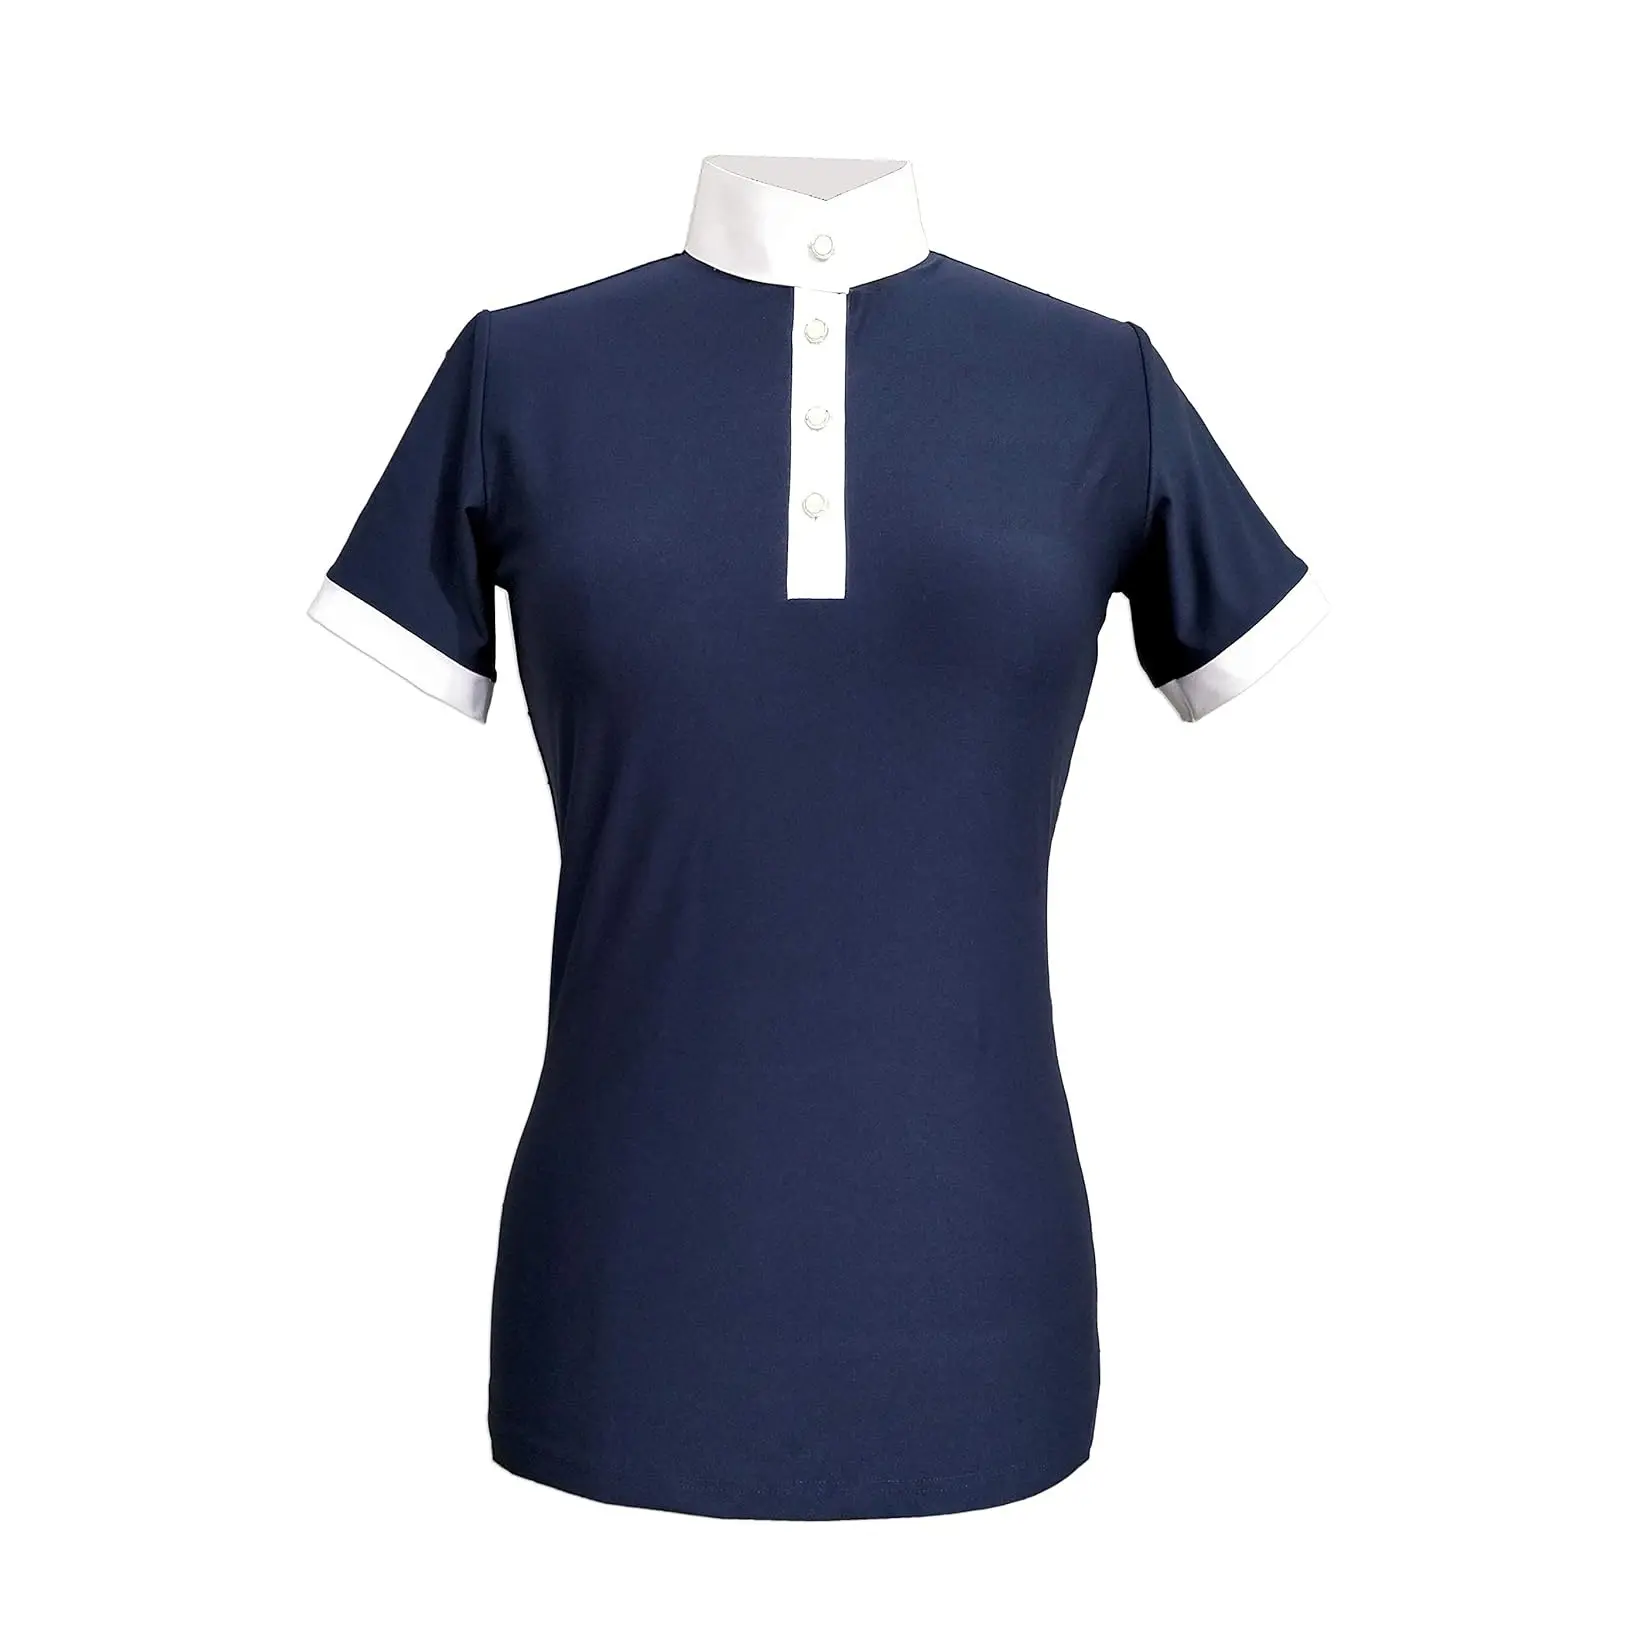 Прямая поставка с завода, Женская быстросохнущая спортивная рубашка для всадника с коротким рукавом, доступна по оптовой цене из Индии